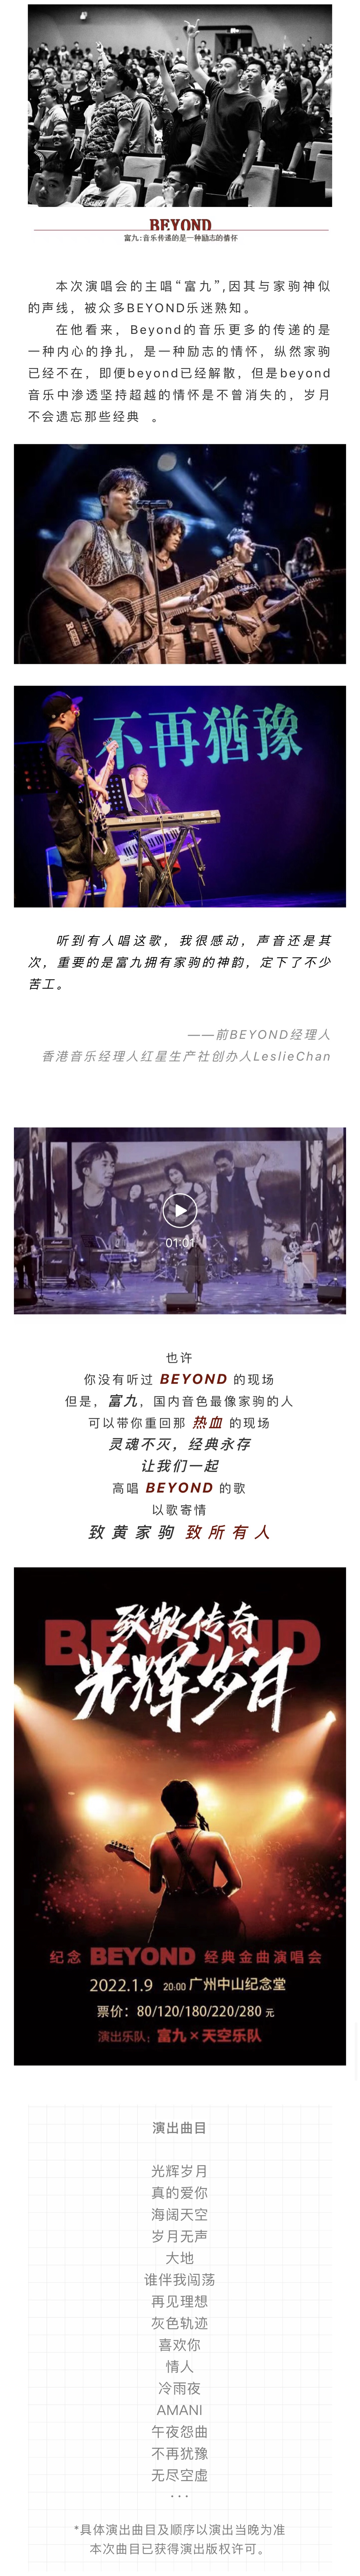 2022致敬传奇∙光辉岁月纪念BEYOND经典金曲音乐会-广州站